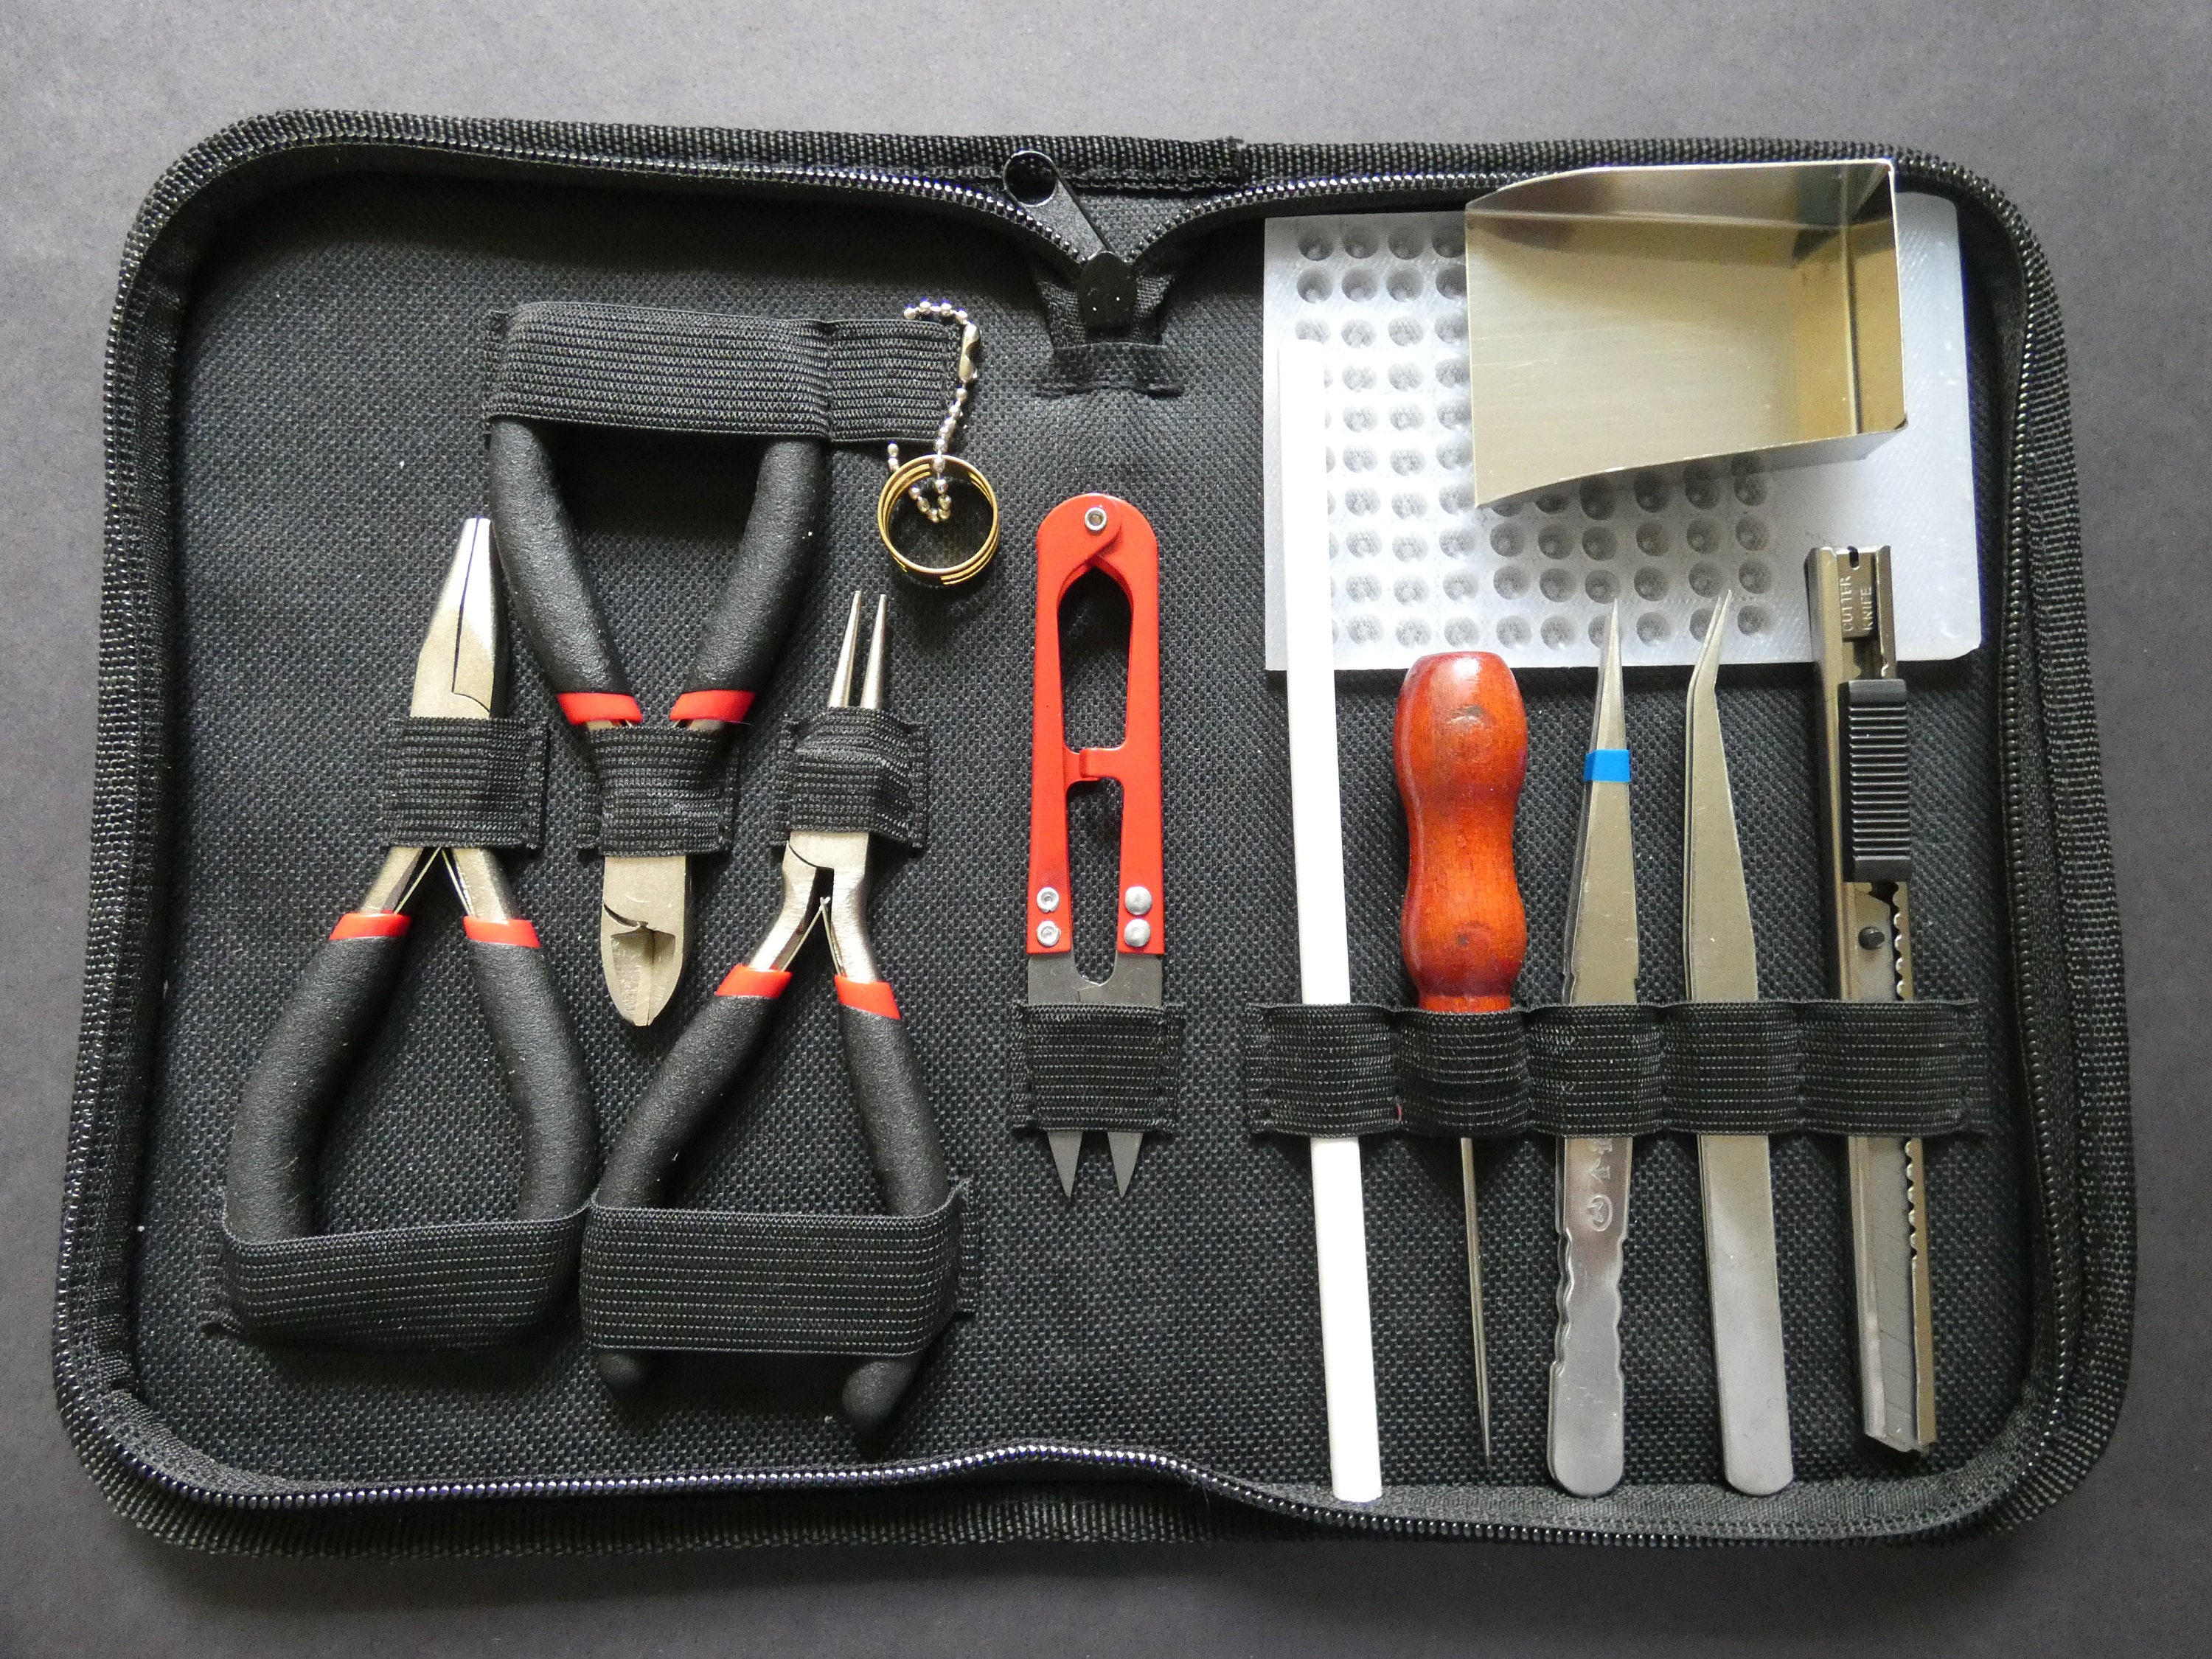 Beginner Jewelry Making Tool Kit